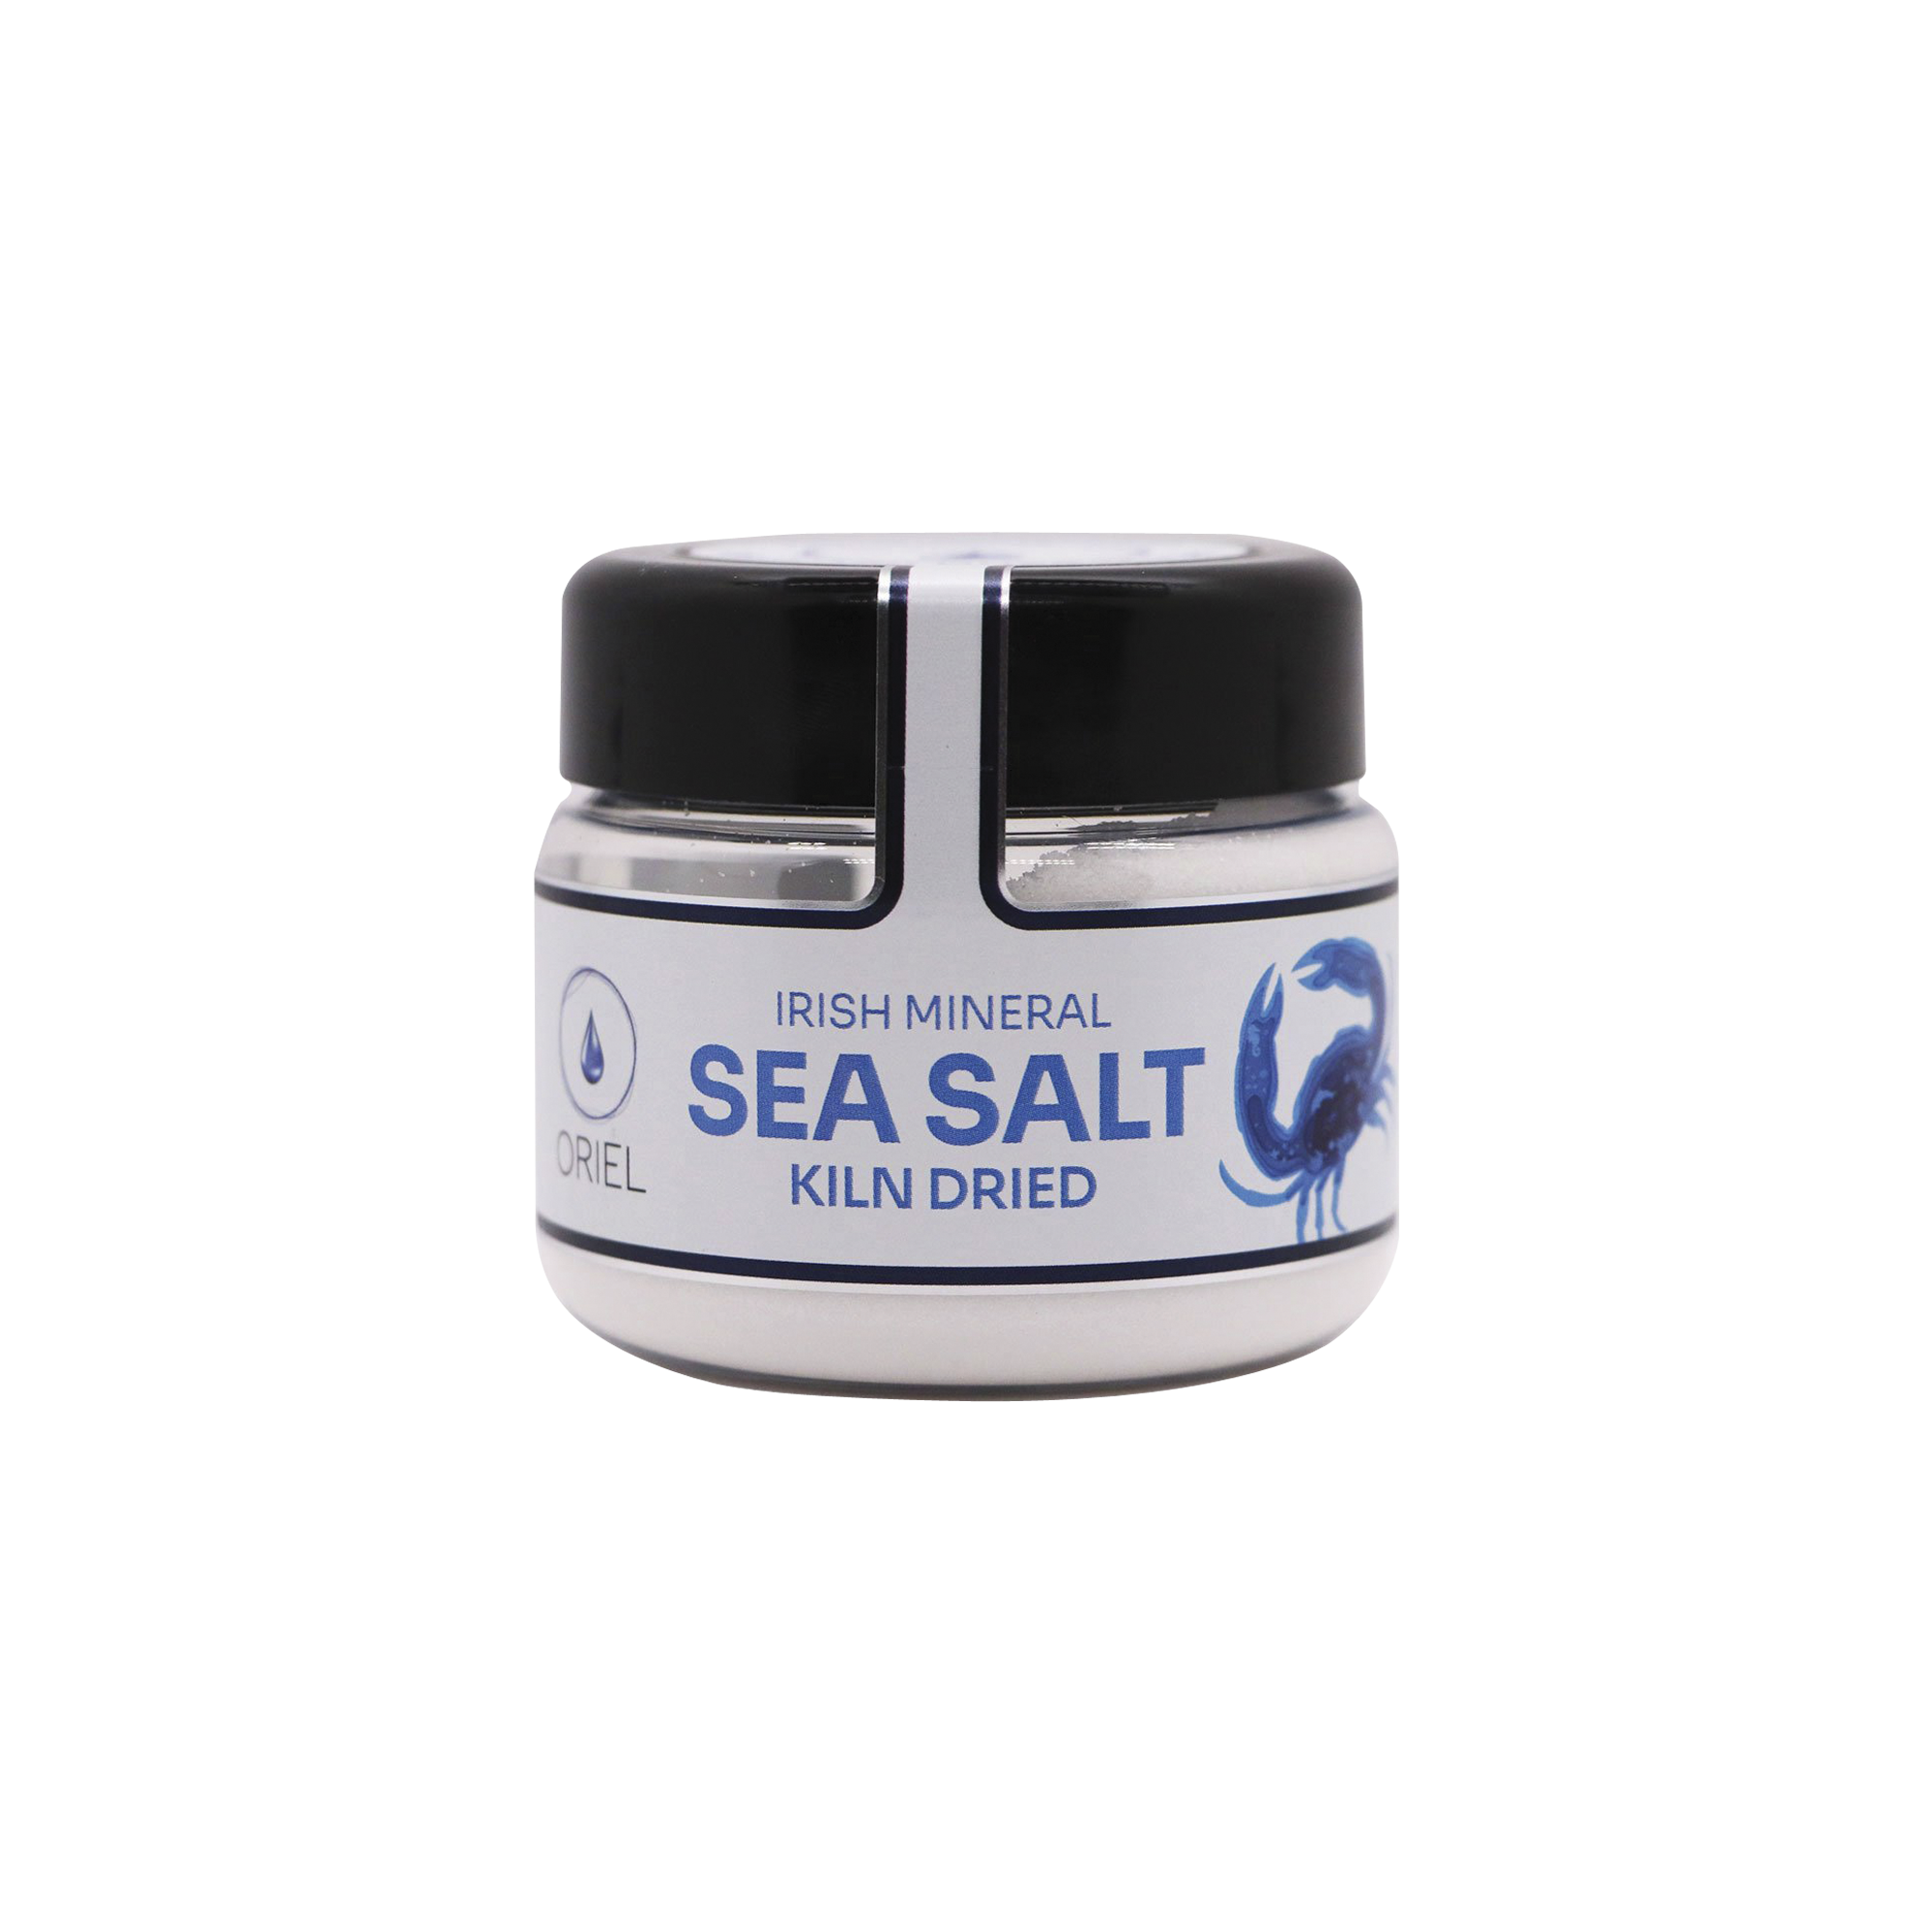 Irish Mineral Sea Salt – Kiln Dried